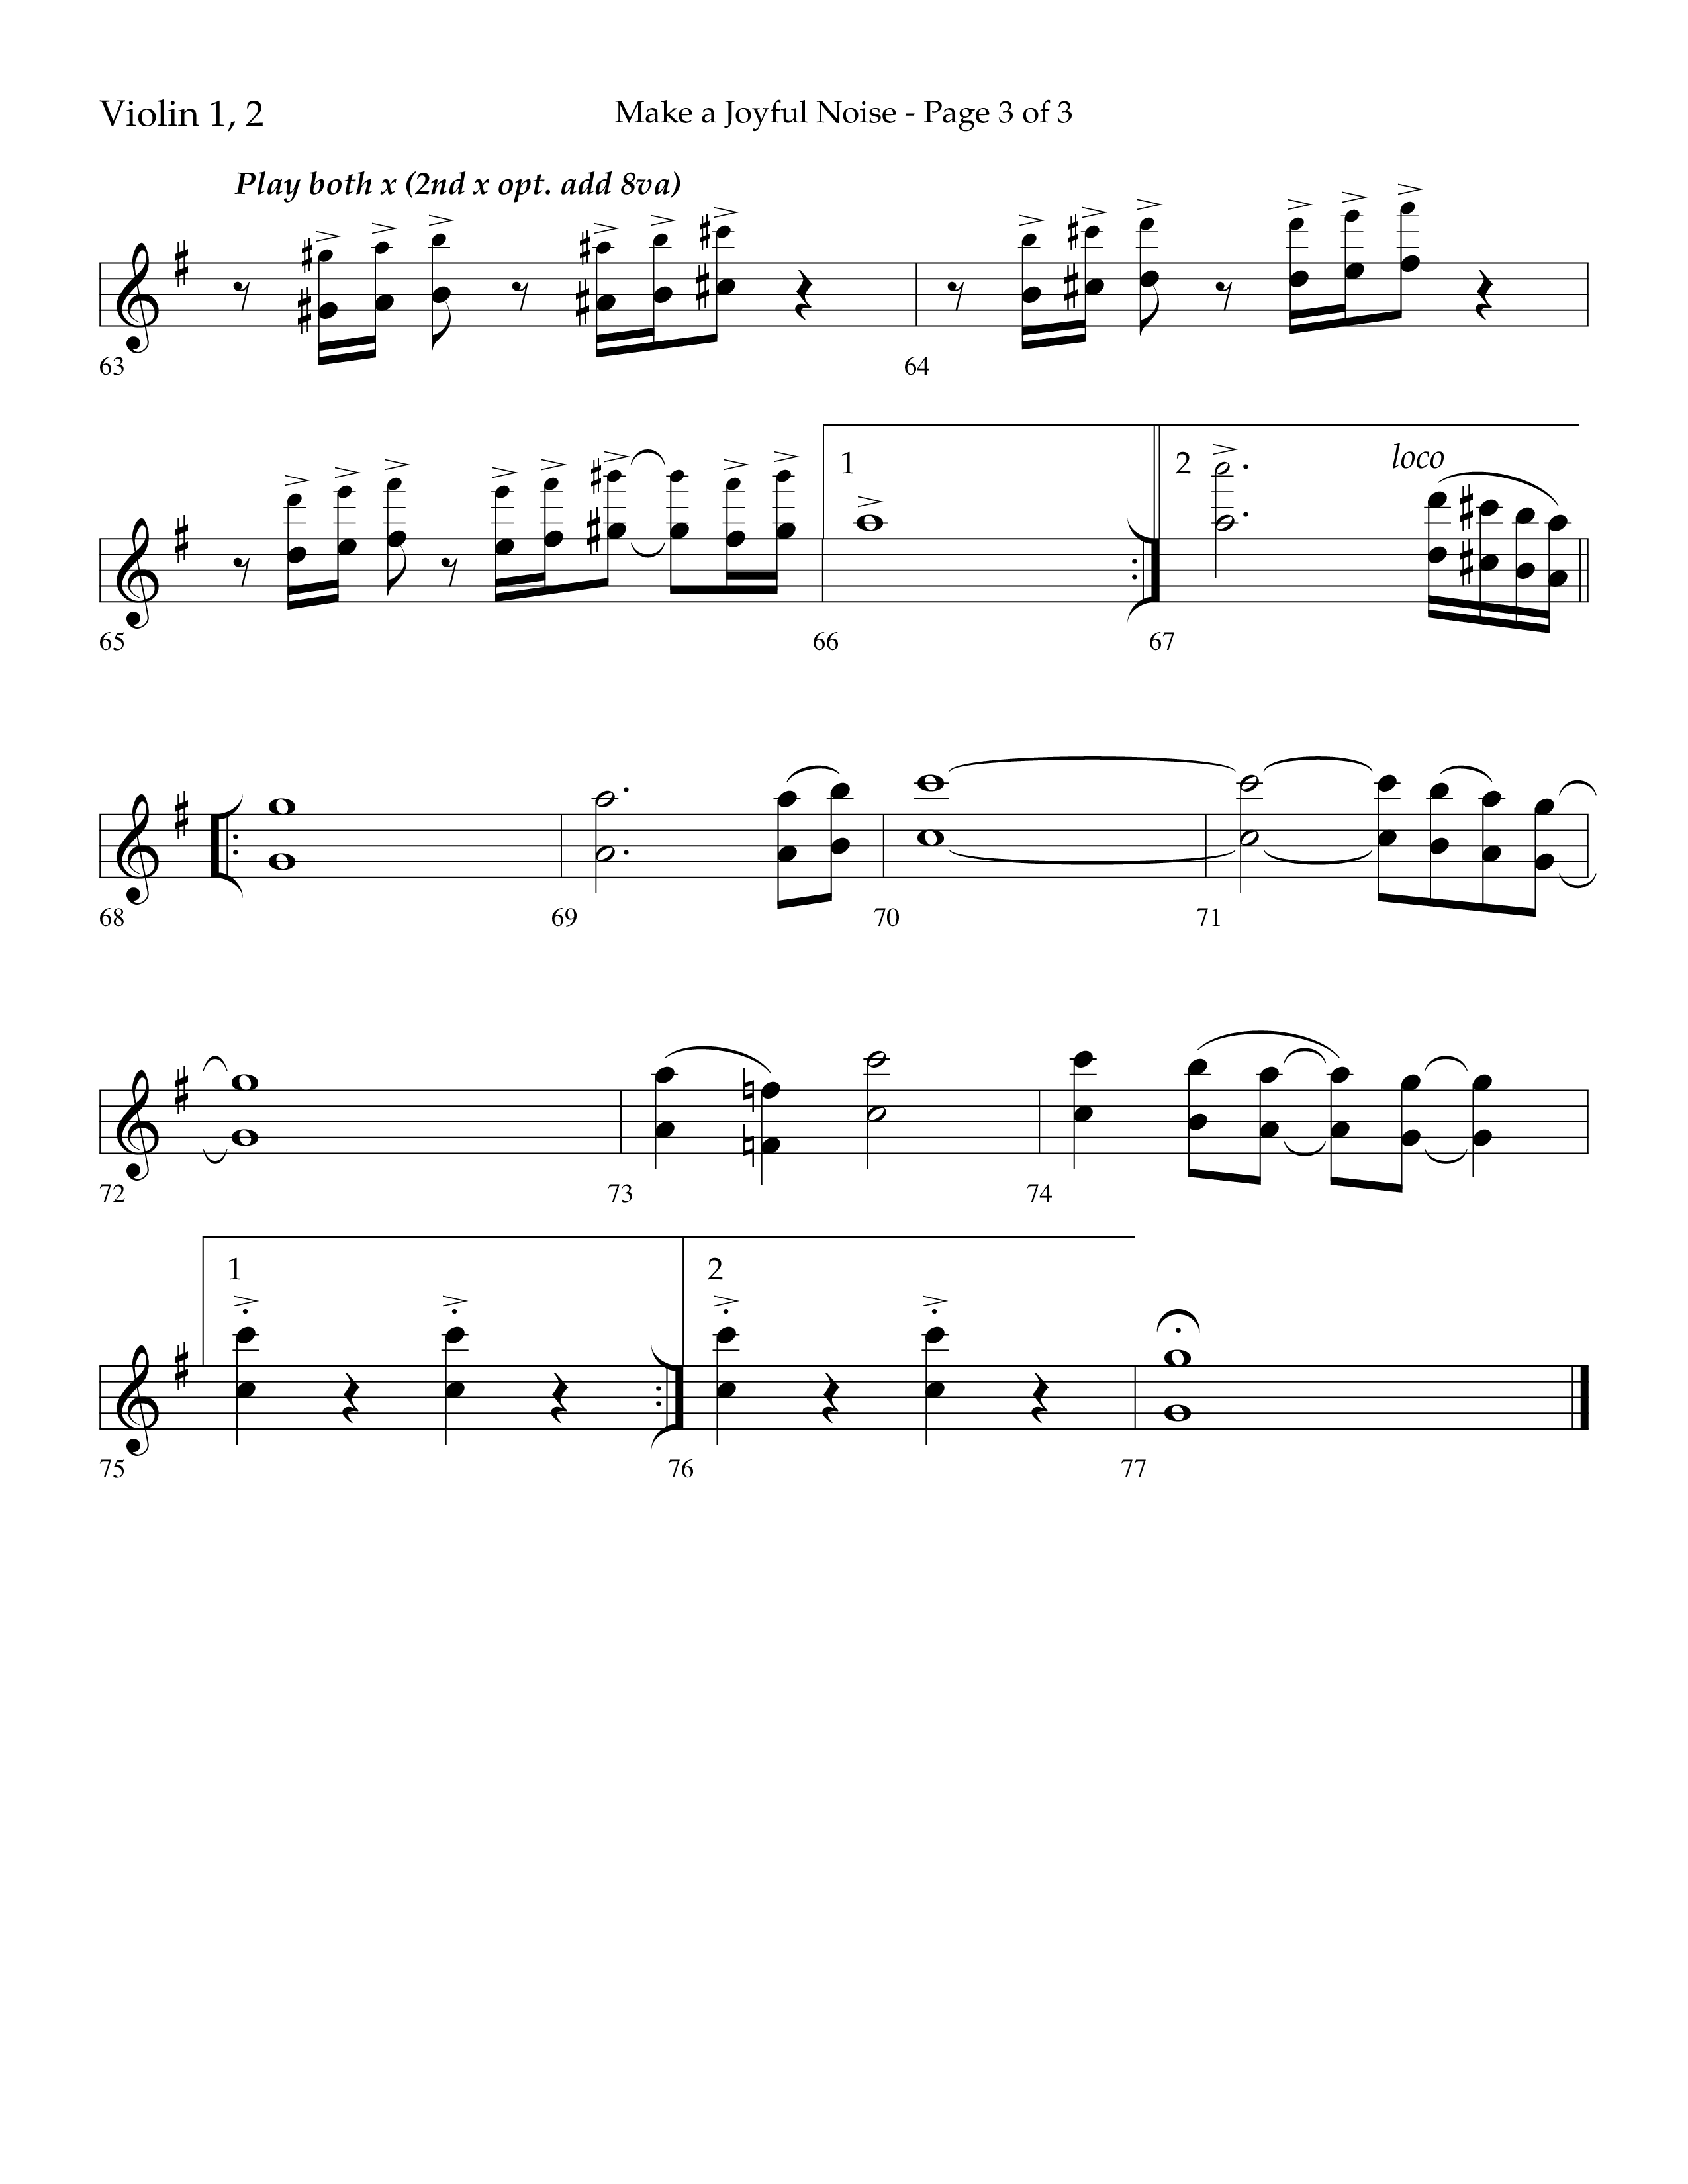 Make A Joyful Noise (Choral Anthem SATB) Violin 1/2 (Lifeway Choral / Arr. David Wise / Orch. Daniel Semsen)